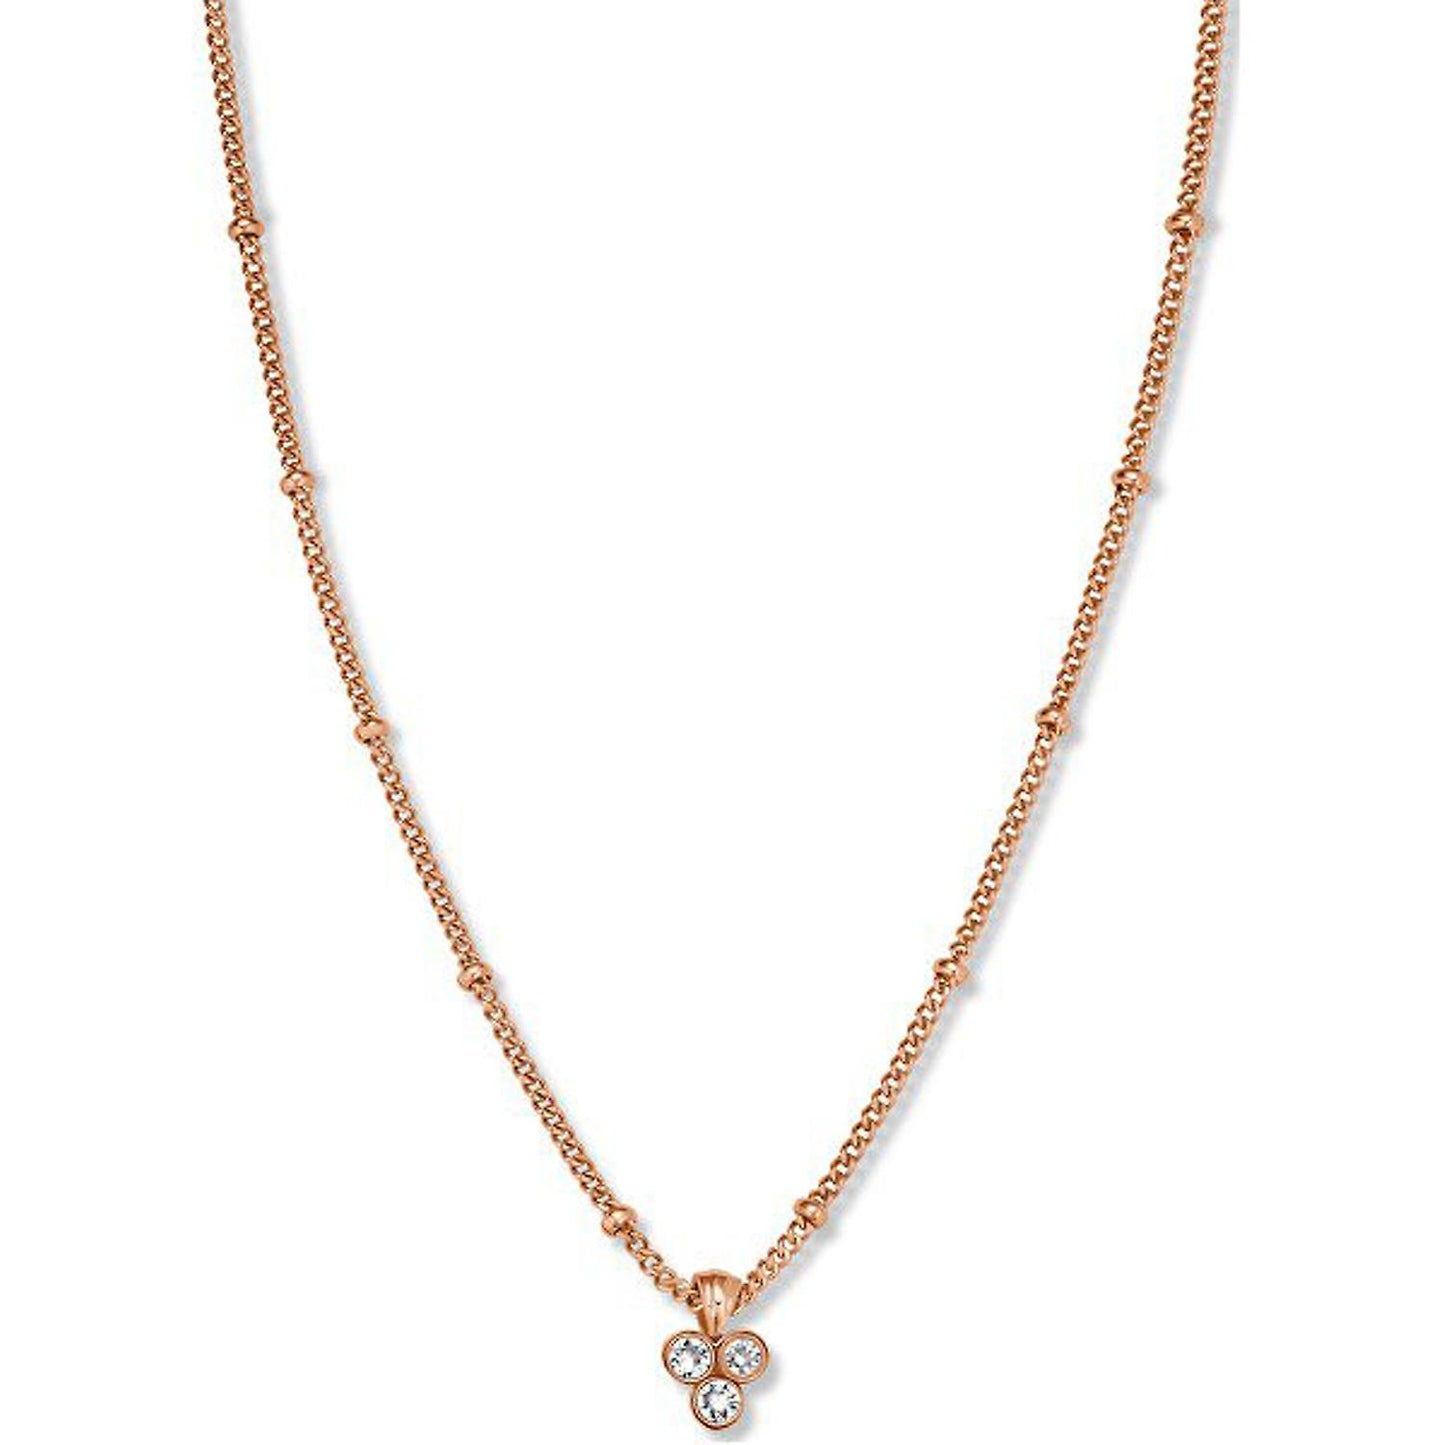 Triple Crystal Necklace - Rose Gold - J443